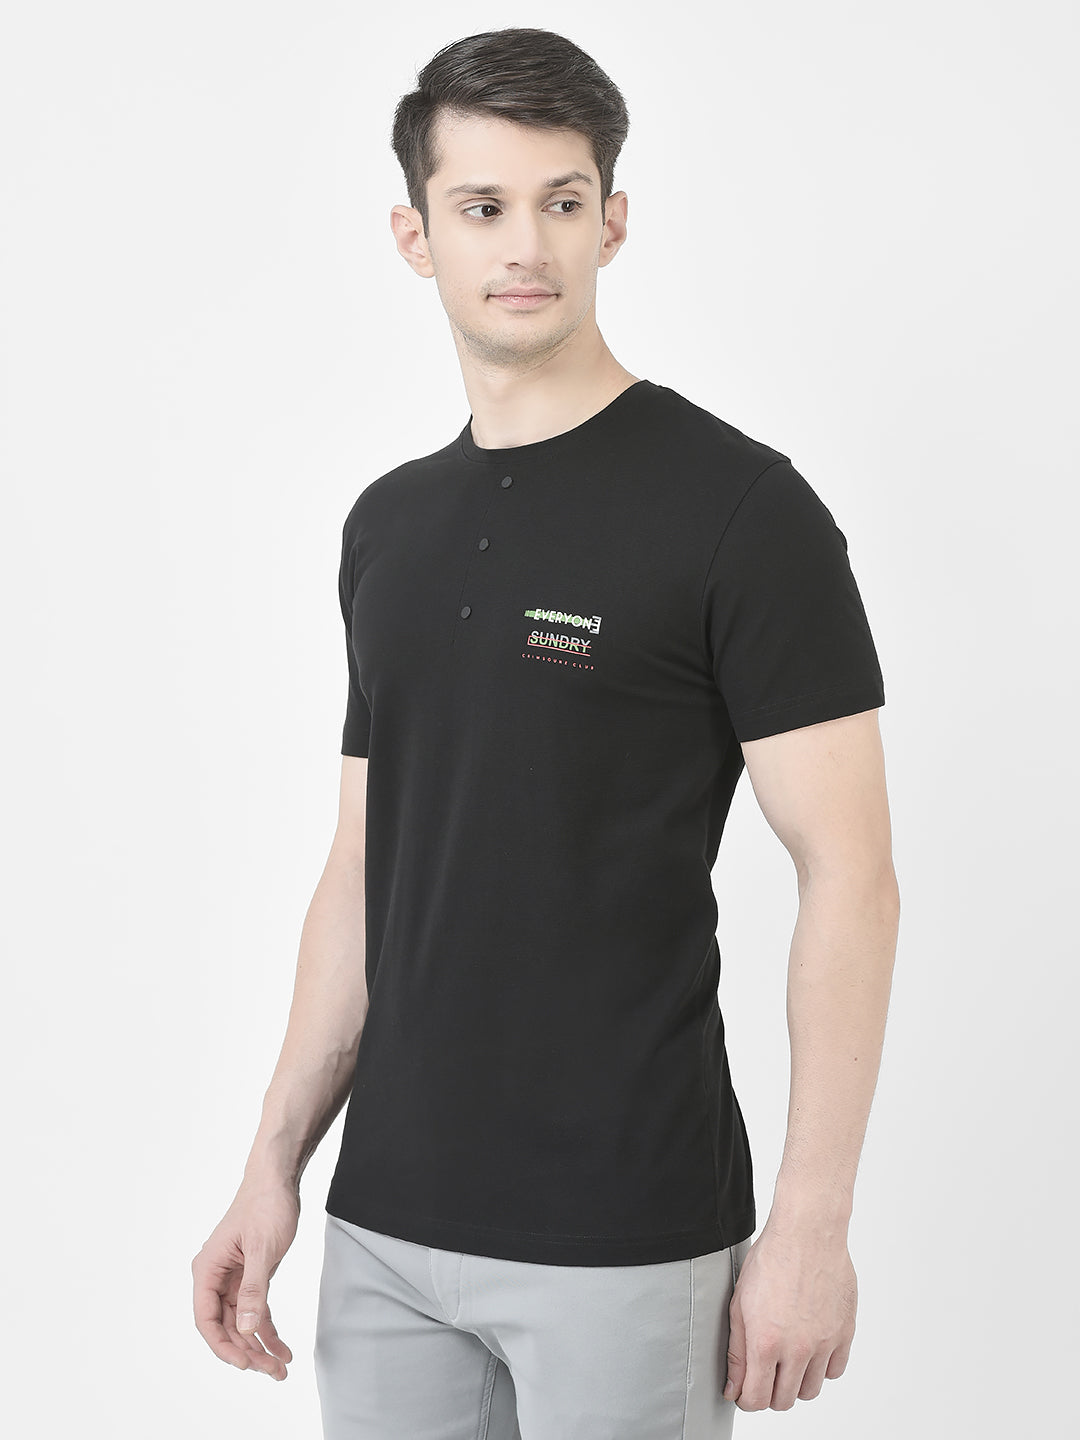  Black Sundry T-Shirt